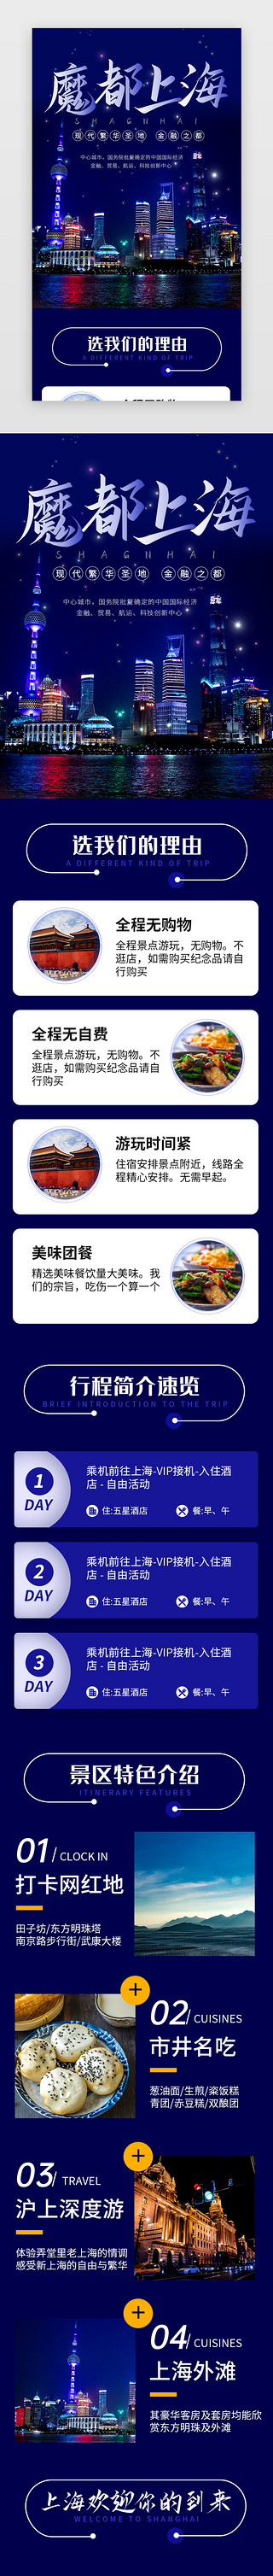 蓝色魔都上海旅行景点介绍H5长图海报